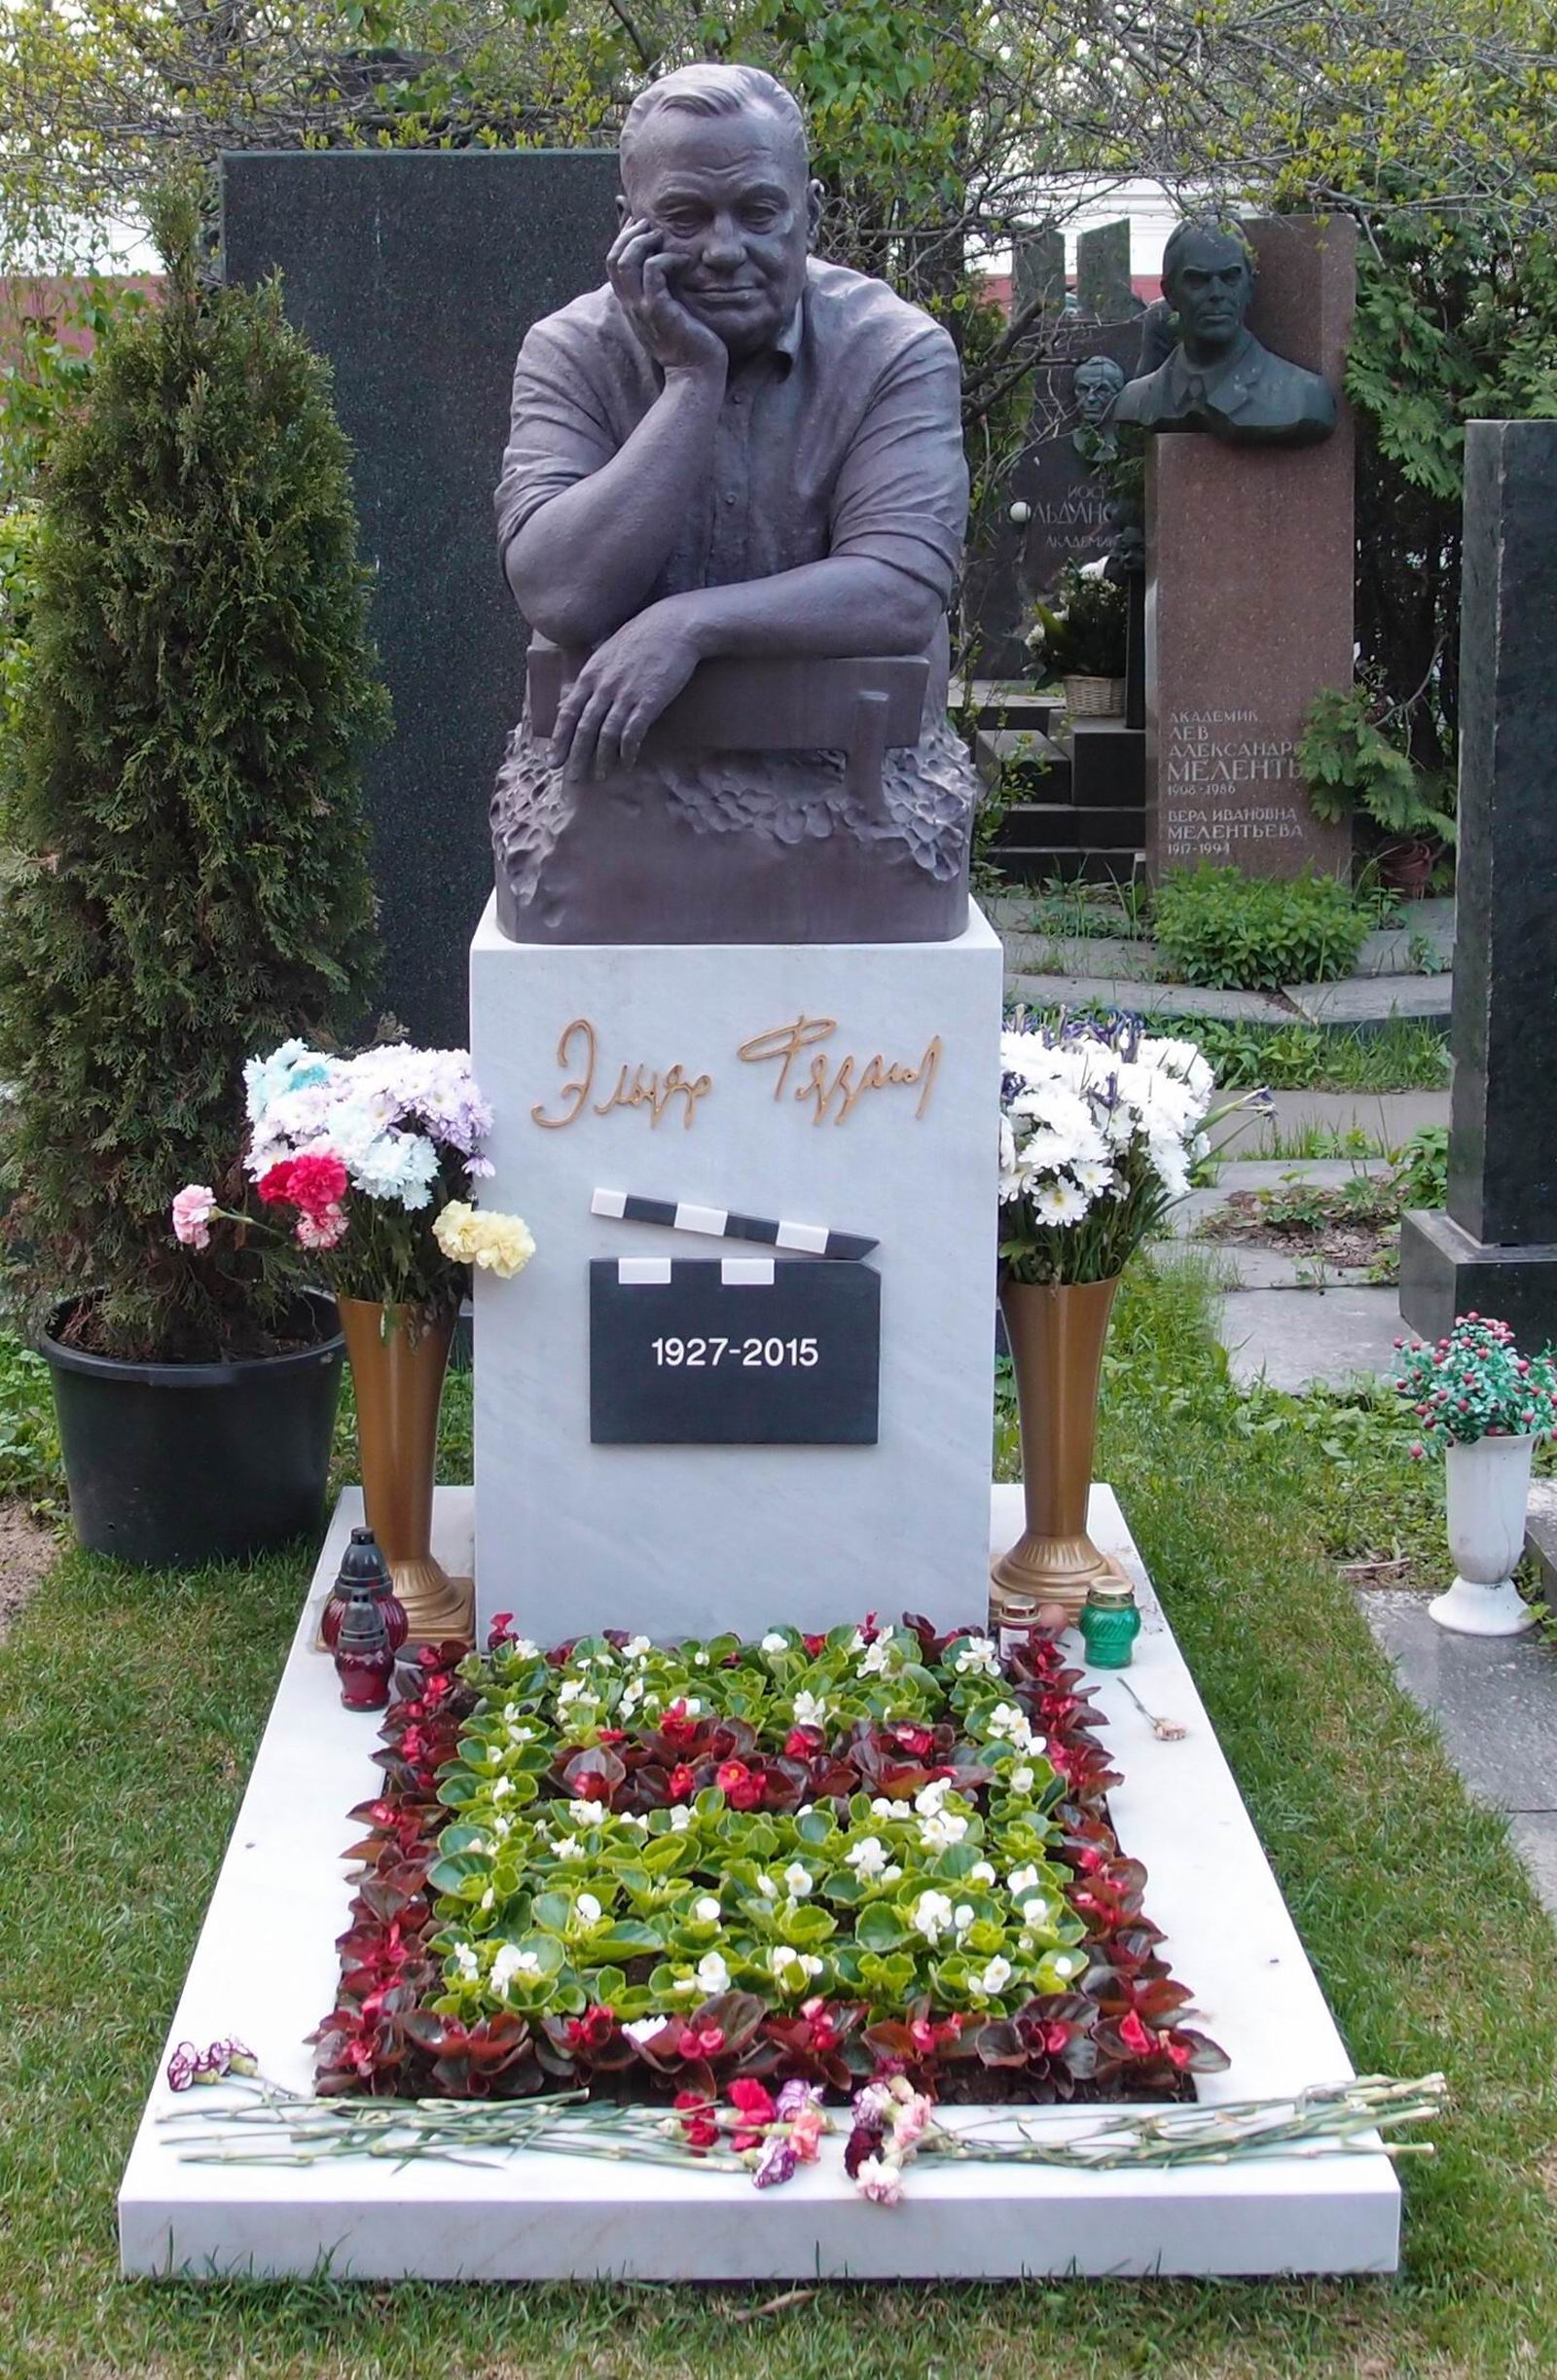 Памятник на могиле Рязанова Э.А. (1927–2015), ск. Важа Микаберидзе (Prasto), на Новодевичьем кладбище (10–1–20). Нажмите левую кнопку мыши чтобы увидеть фрагмент памятника.